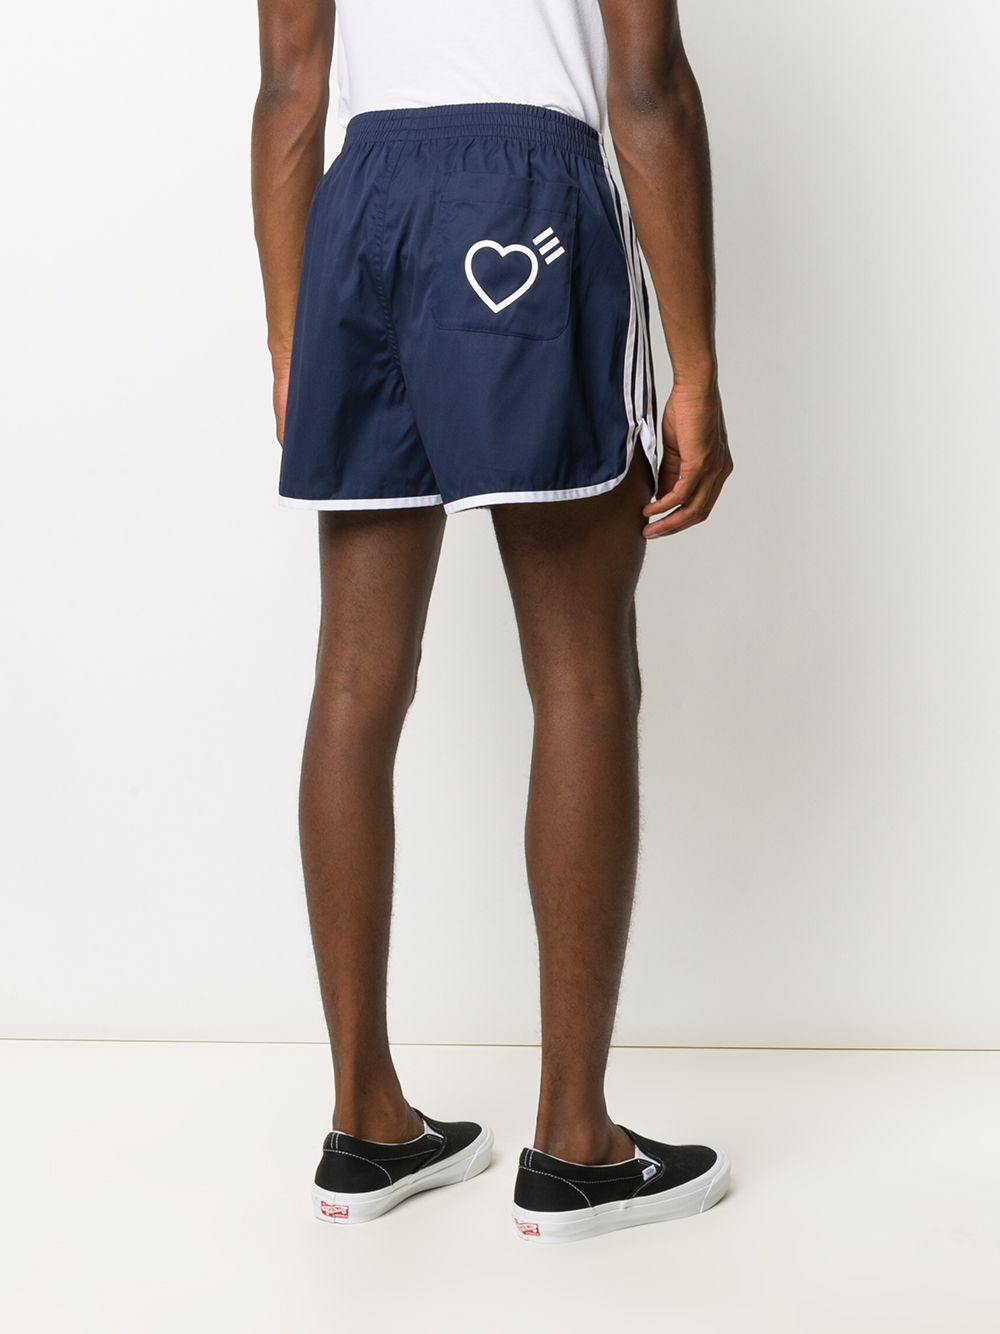 фото Adidas спортивные шорты с вышивкой